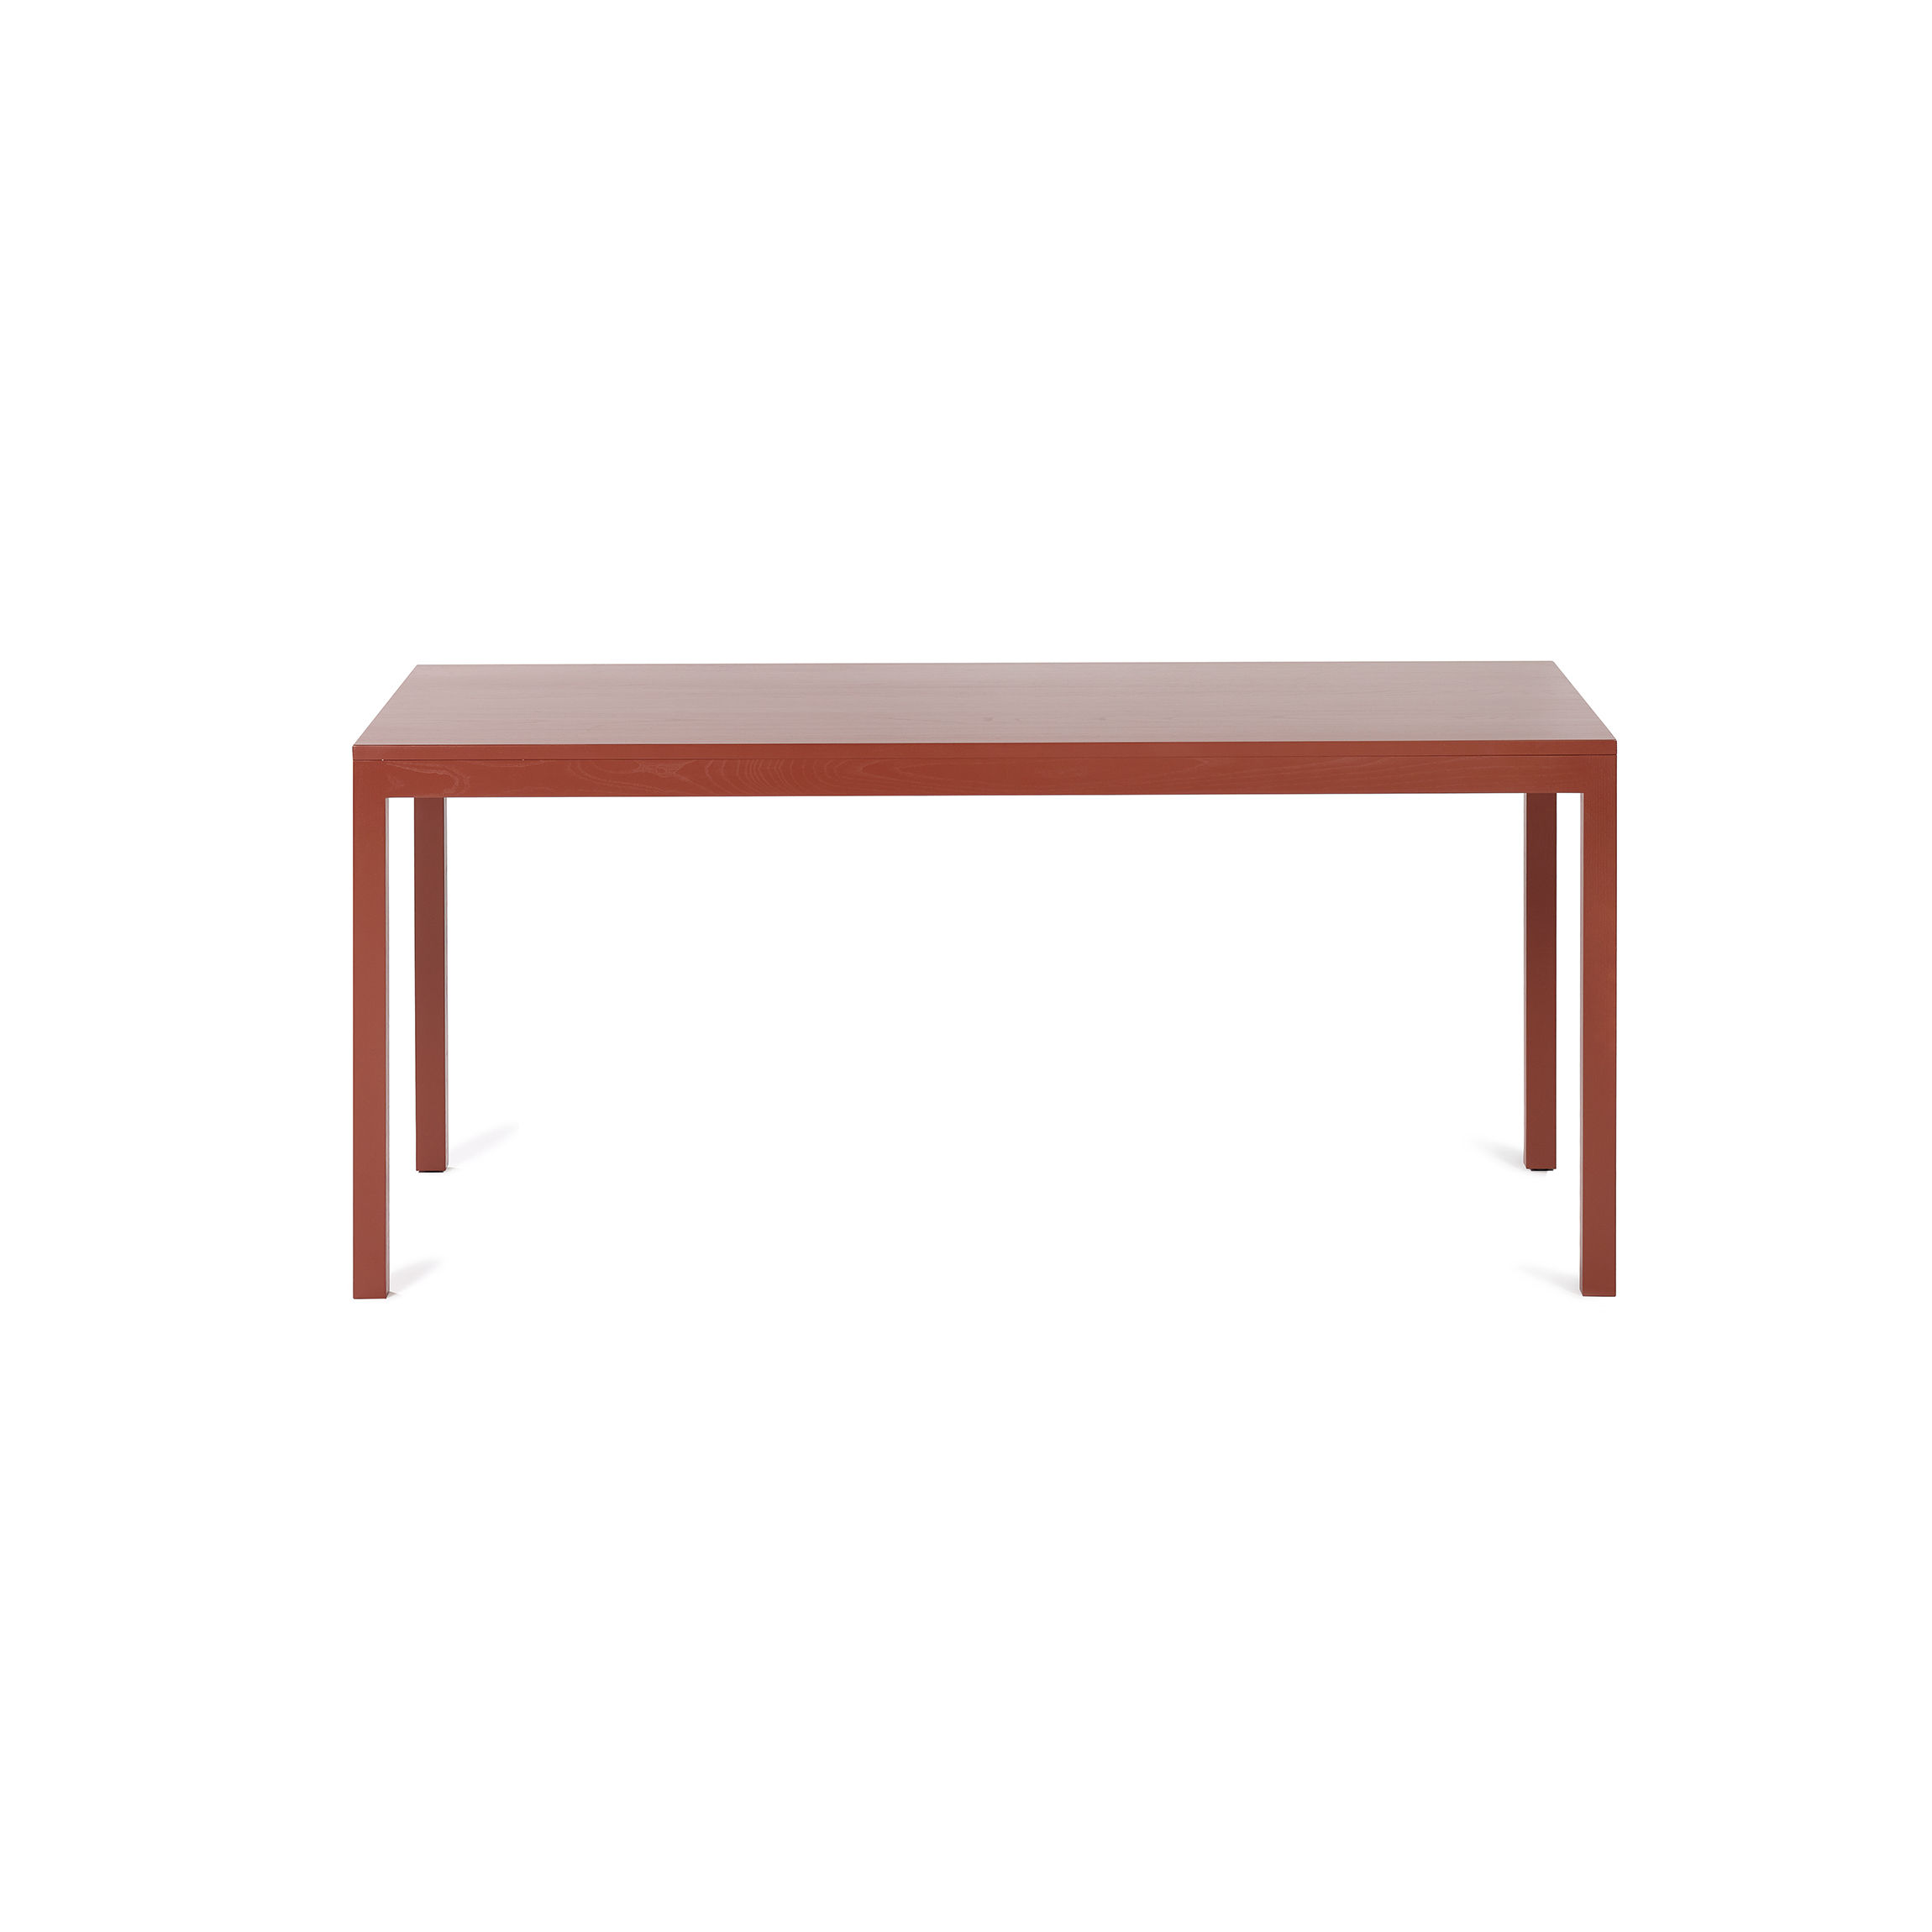 lehm - Made Silent In | Design valerie von Tisch objects Small rechteckiger